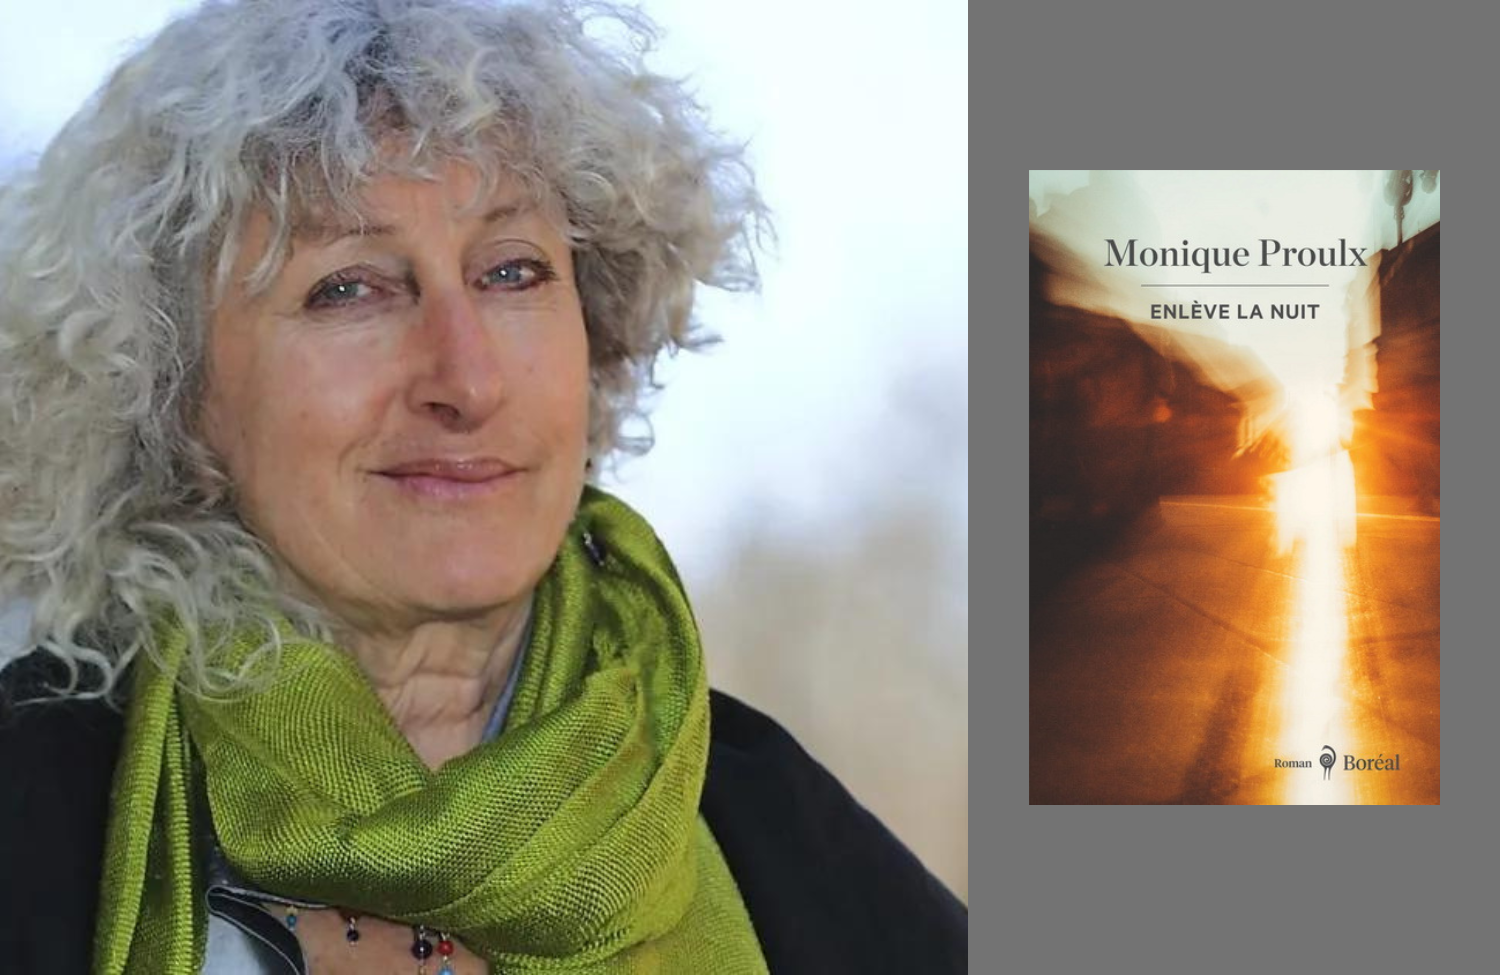 Portrait de Monique Proulx à gauche et la couverture du livre Enlève la nuit à droite.